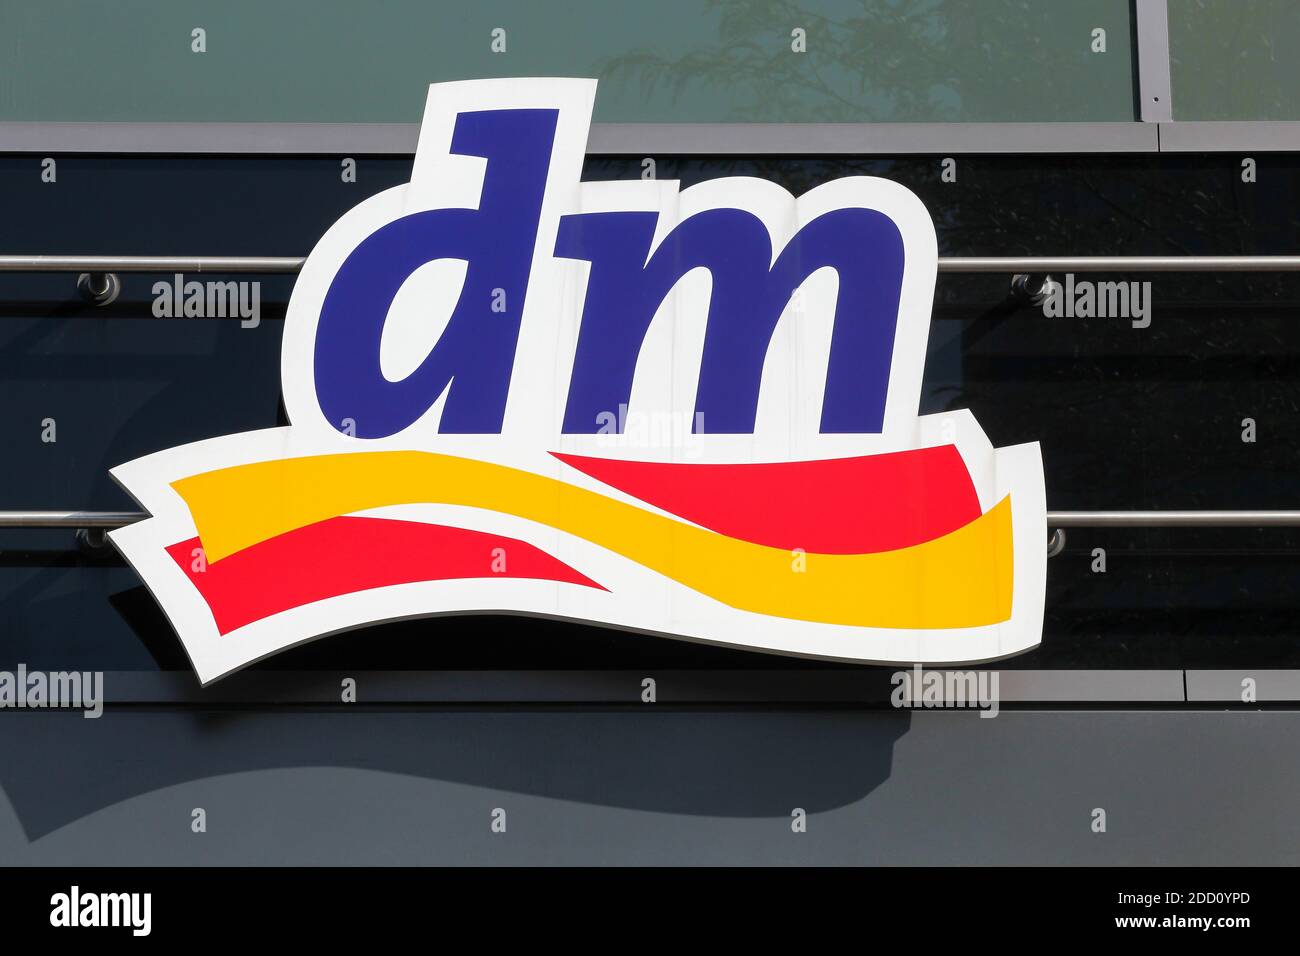 Berlino, Germania - 12 luglio 2020: dm logo su una parete. dm-drogerie markt è una catena di negozi al dettaglio che vende cosmetici e articoli sanitari Foto Stock